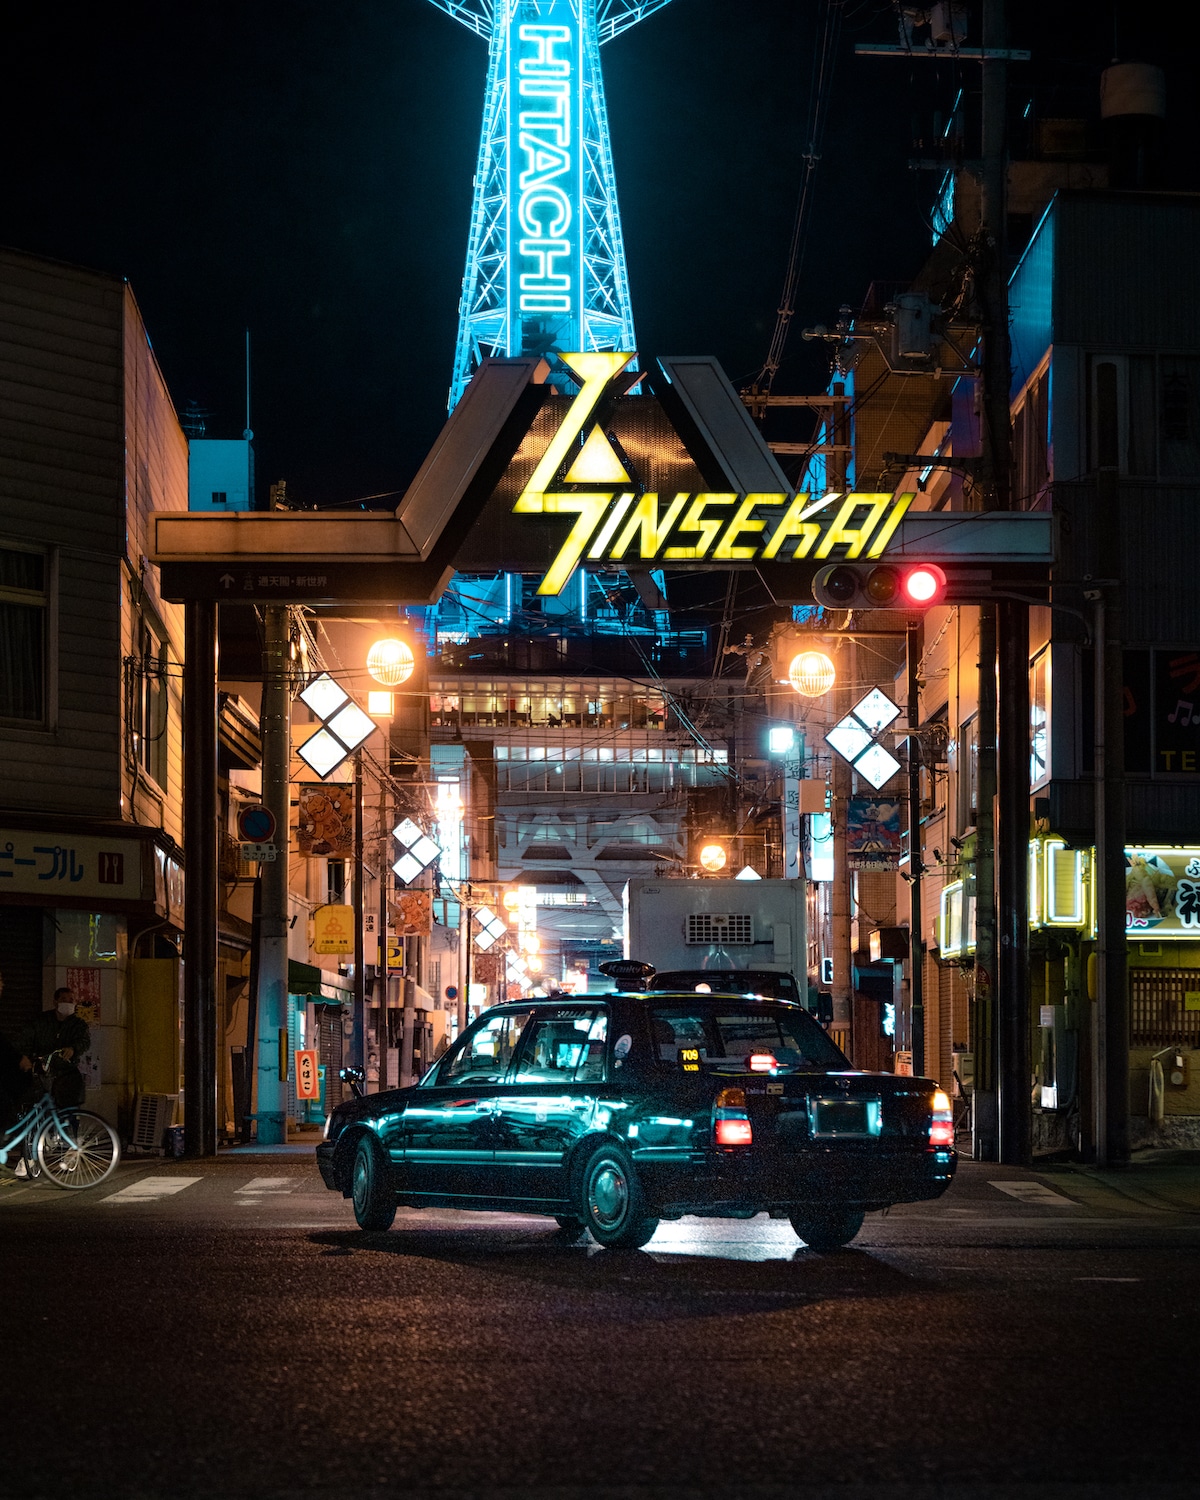 Shinsekai de noche en japon Concurso Japan Lightroom fotografias editadas antes y despues